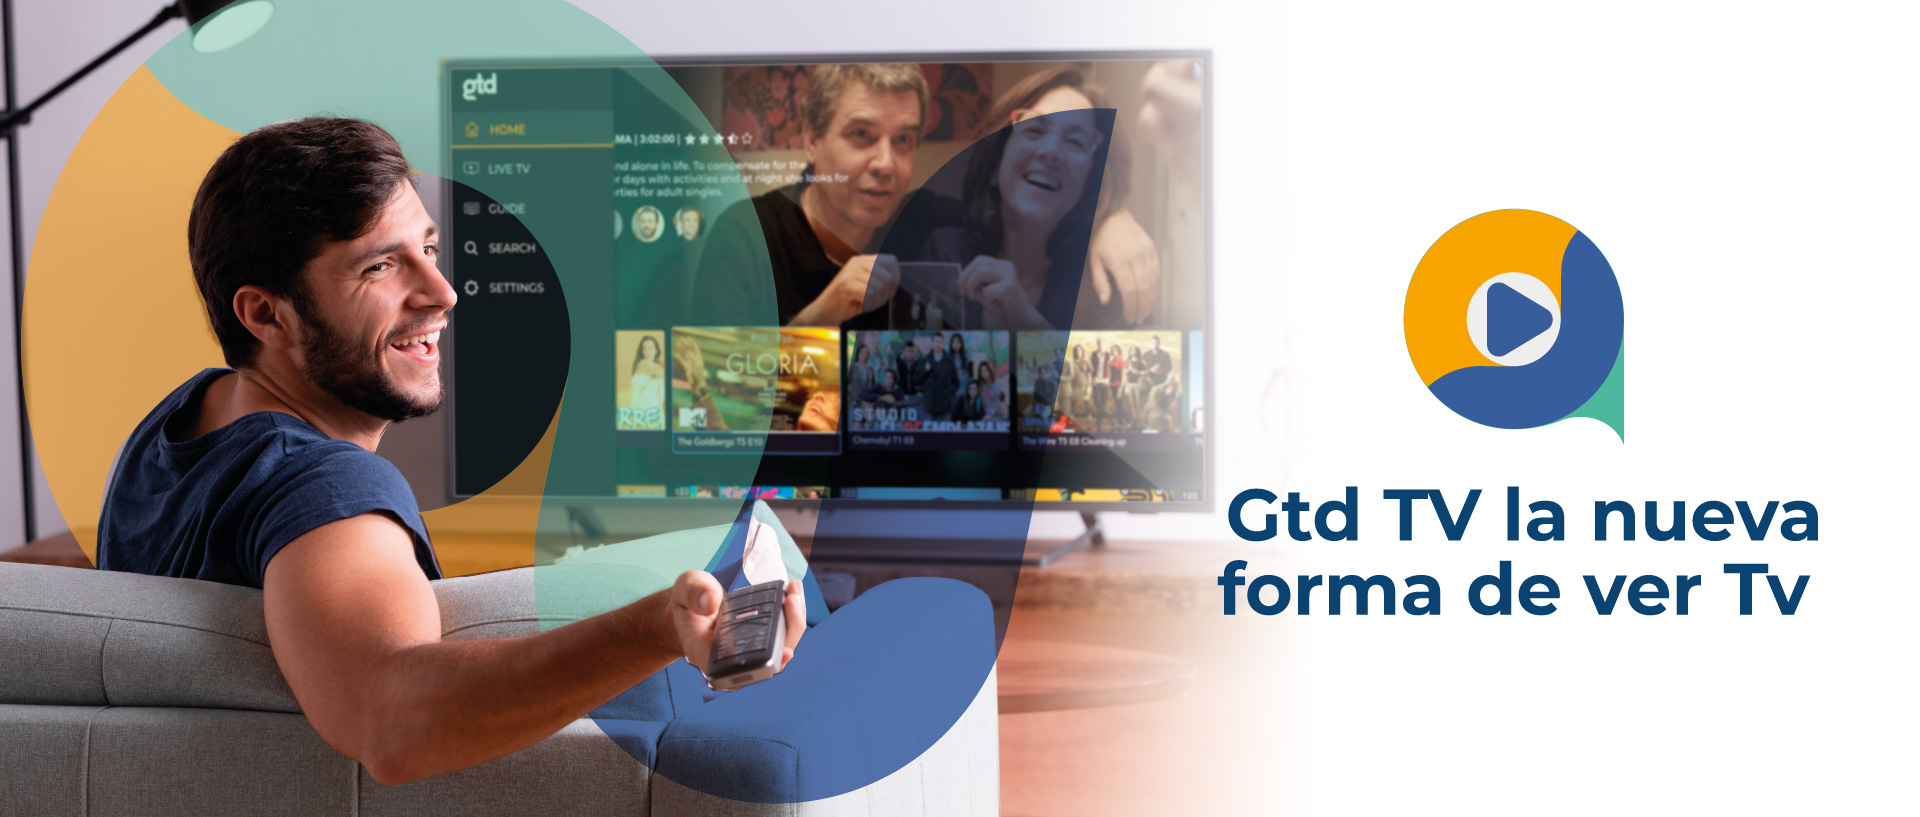 Gtd TV la nueva forma de ver TV